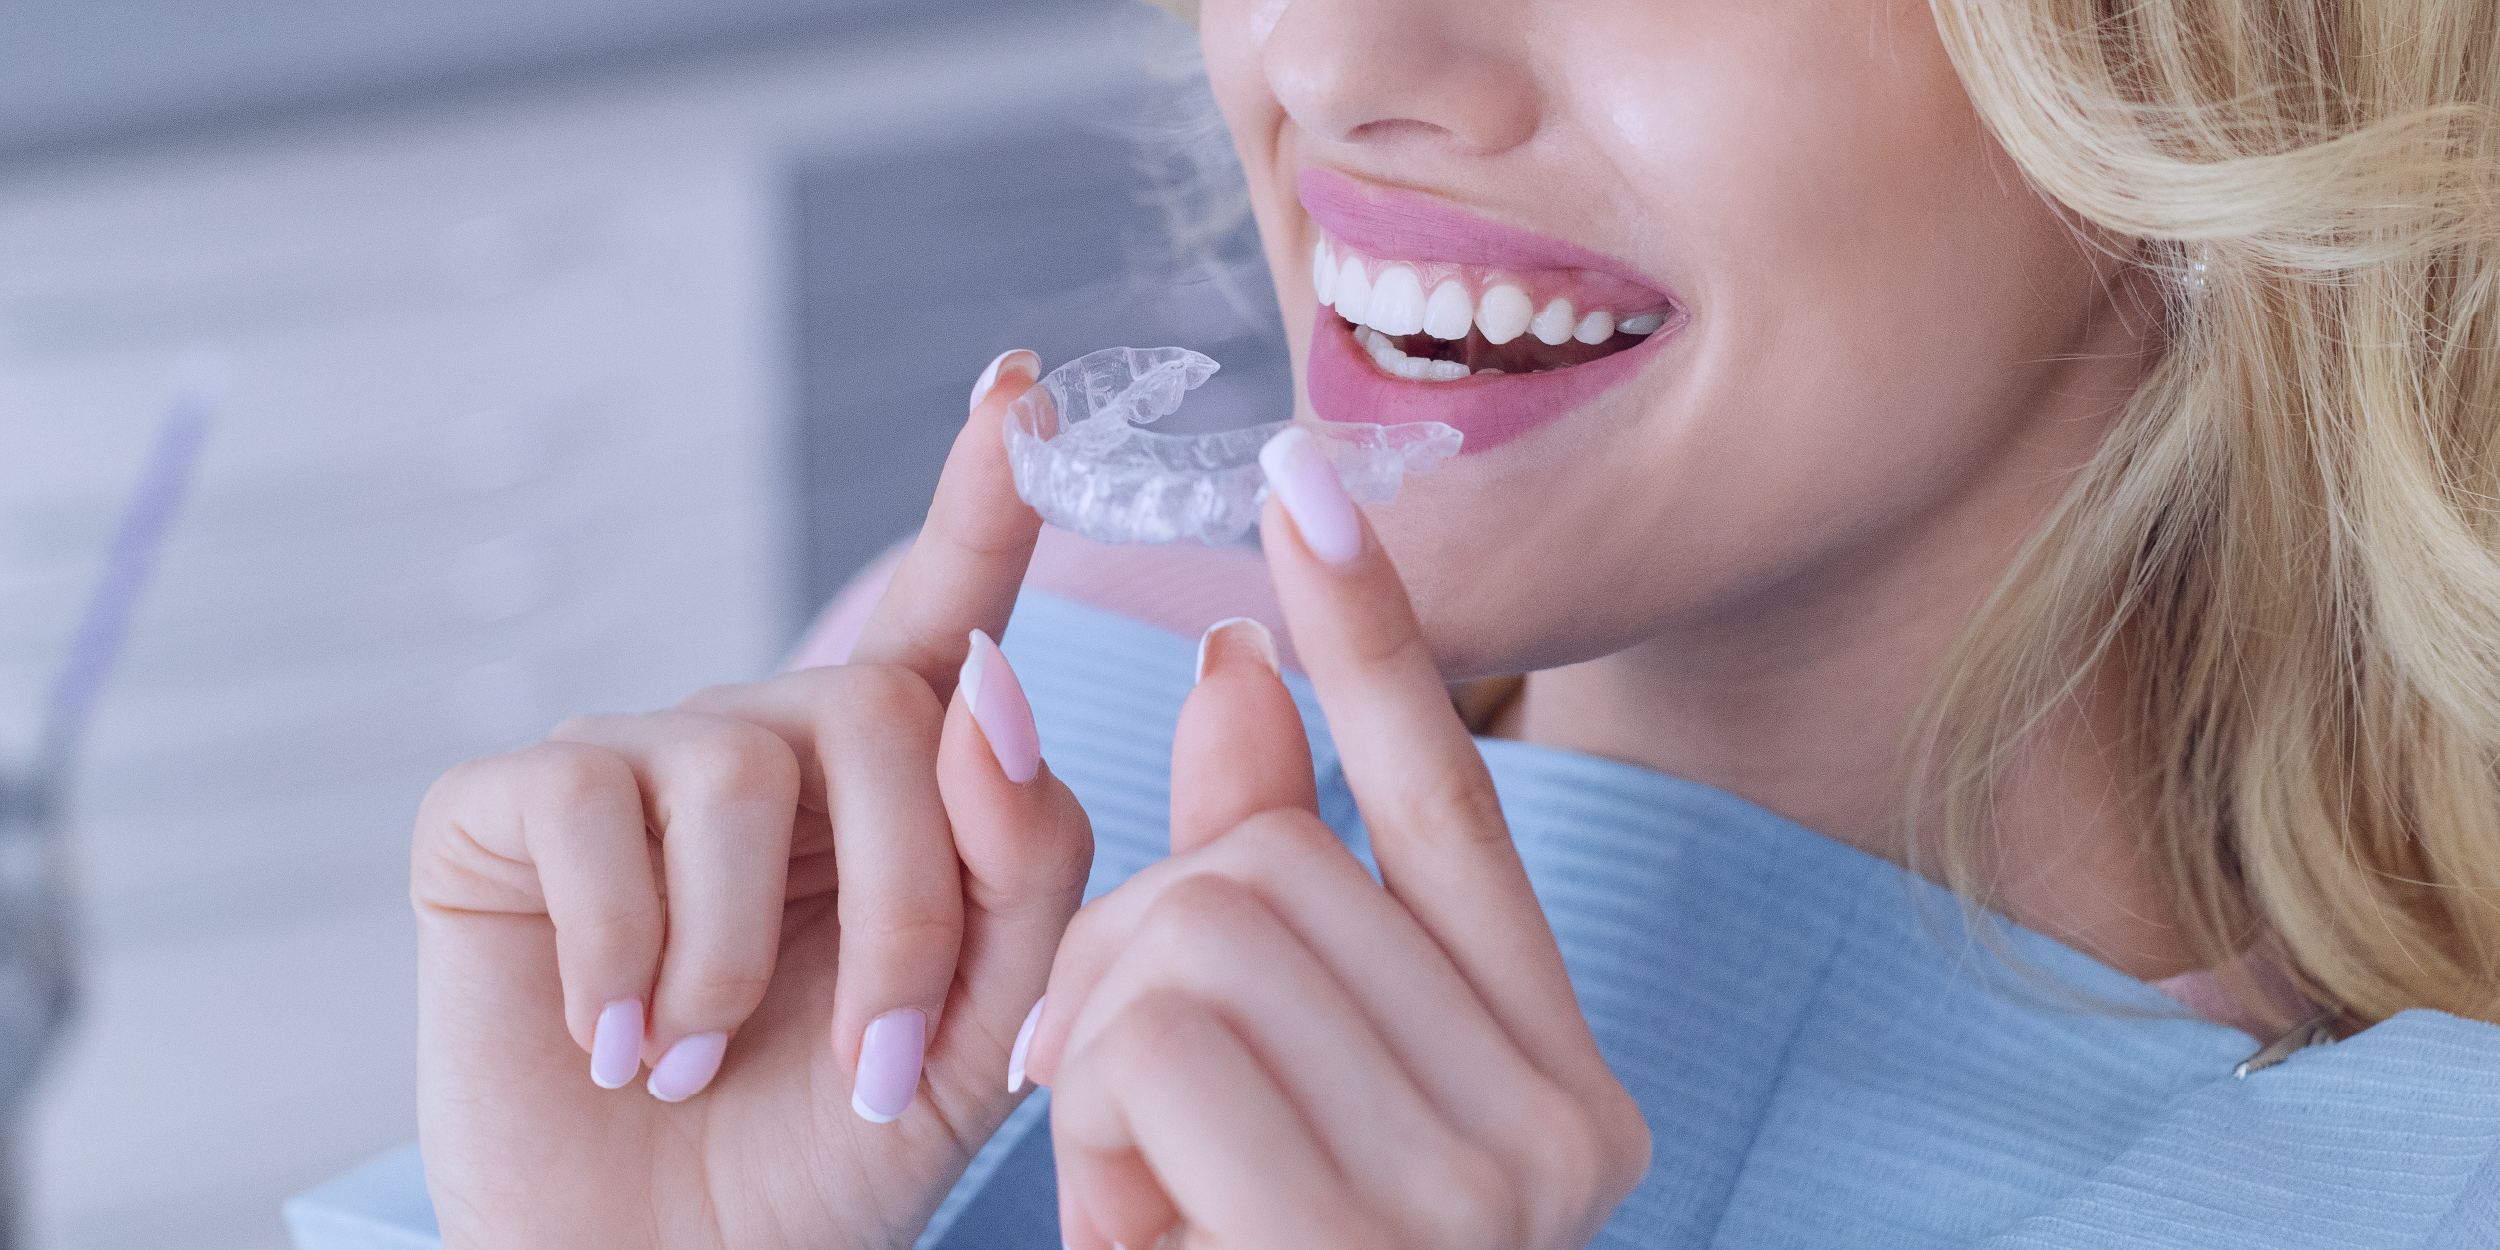 Imagem de uma mulher feliz por estar corrigindo a posição dos seus dentes com um moderno aparelho.